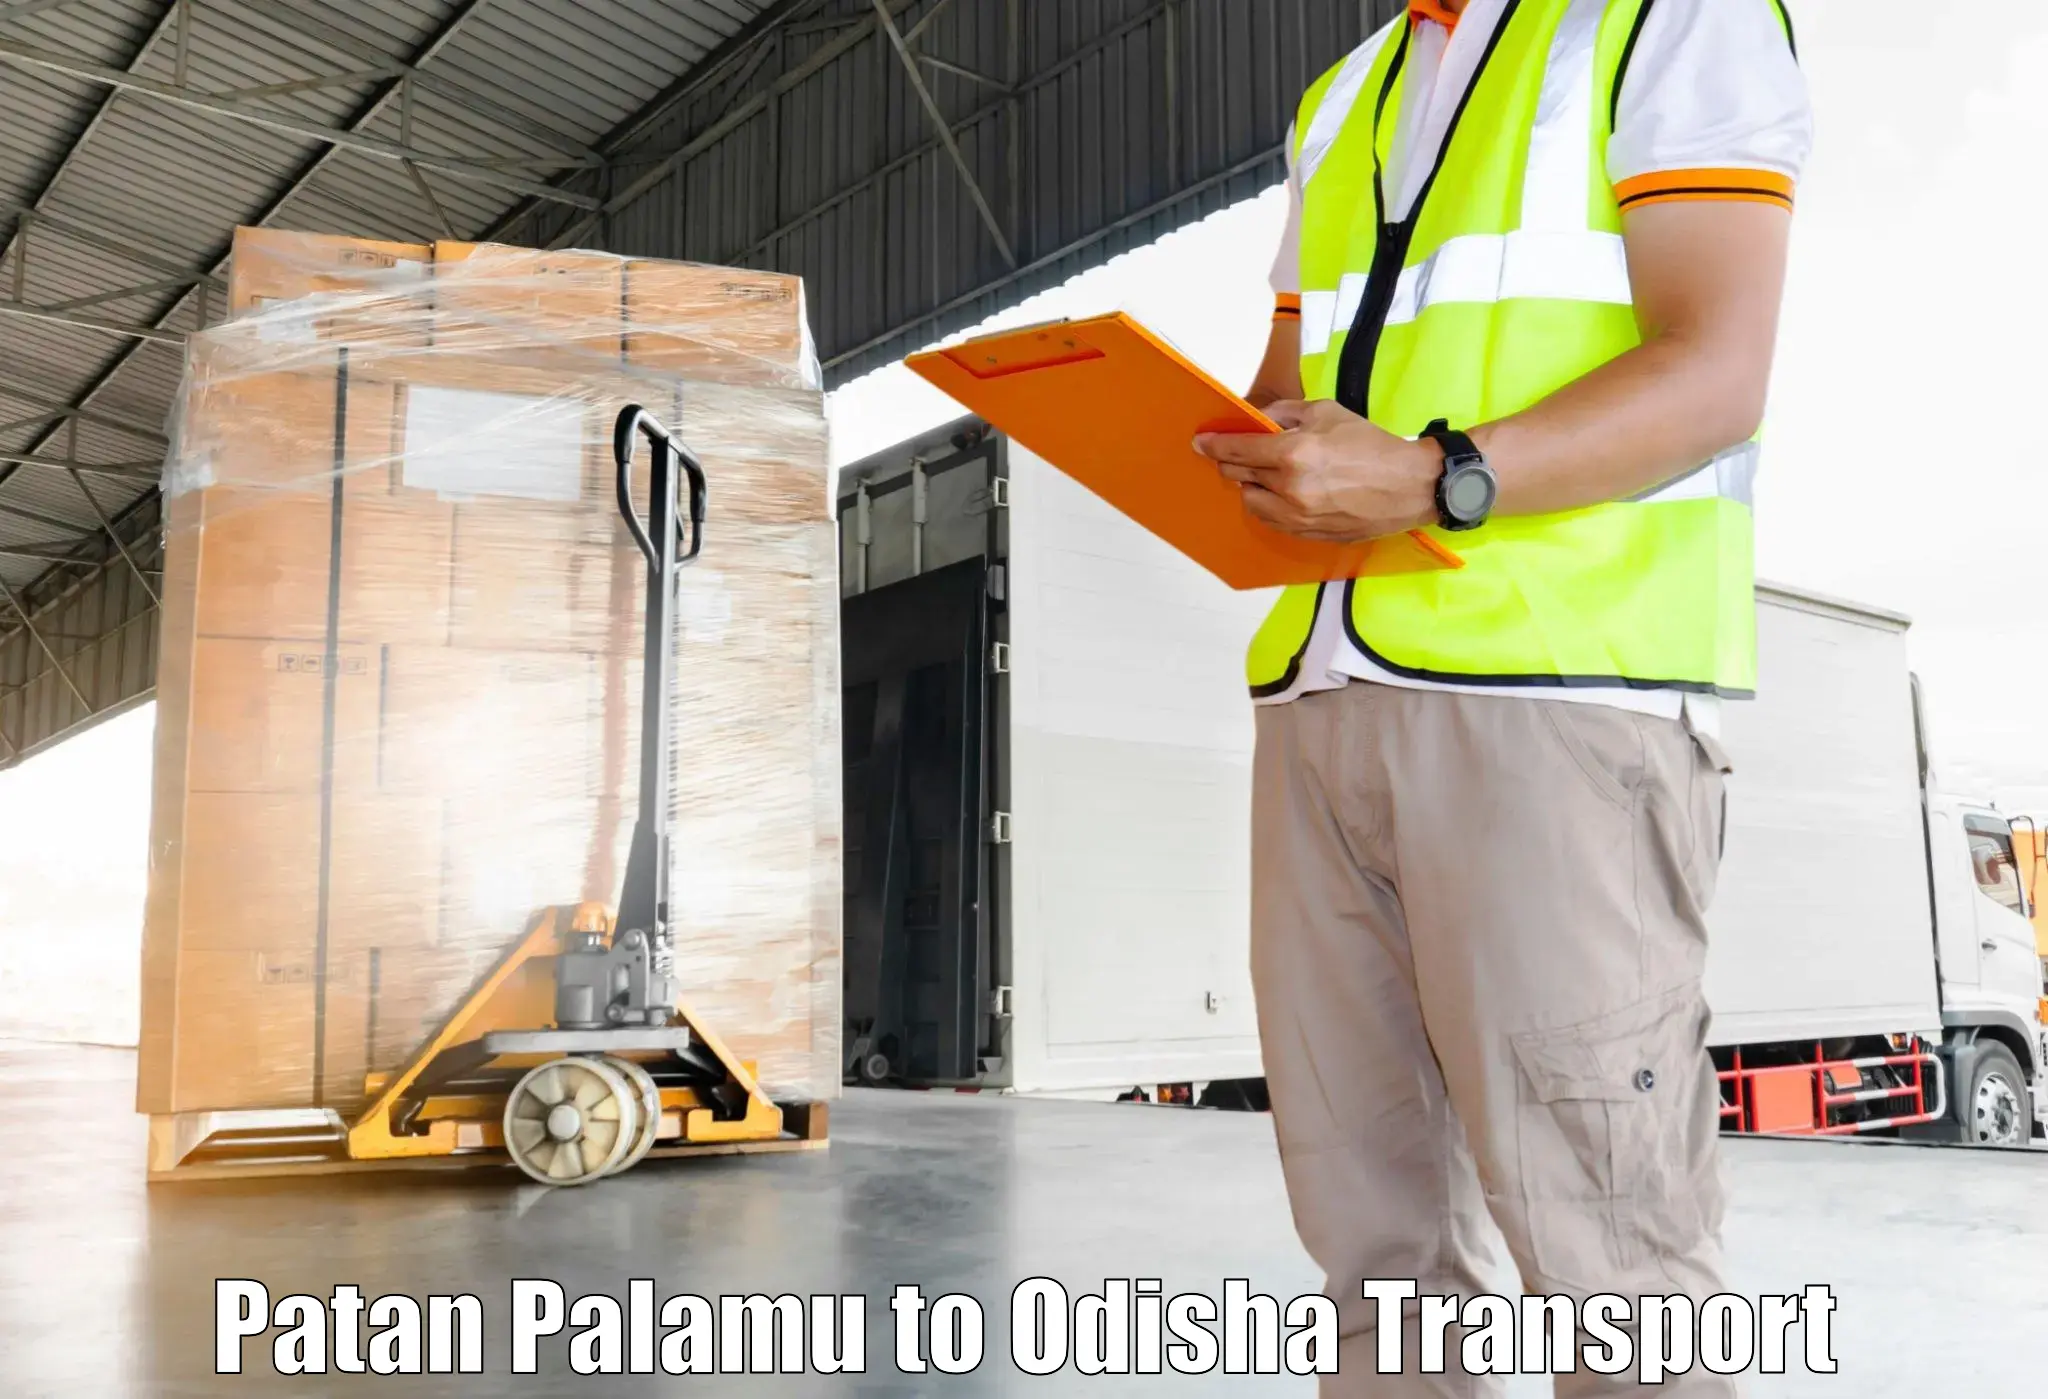 Air cargo transport services Patan Palamu to Balangir